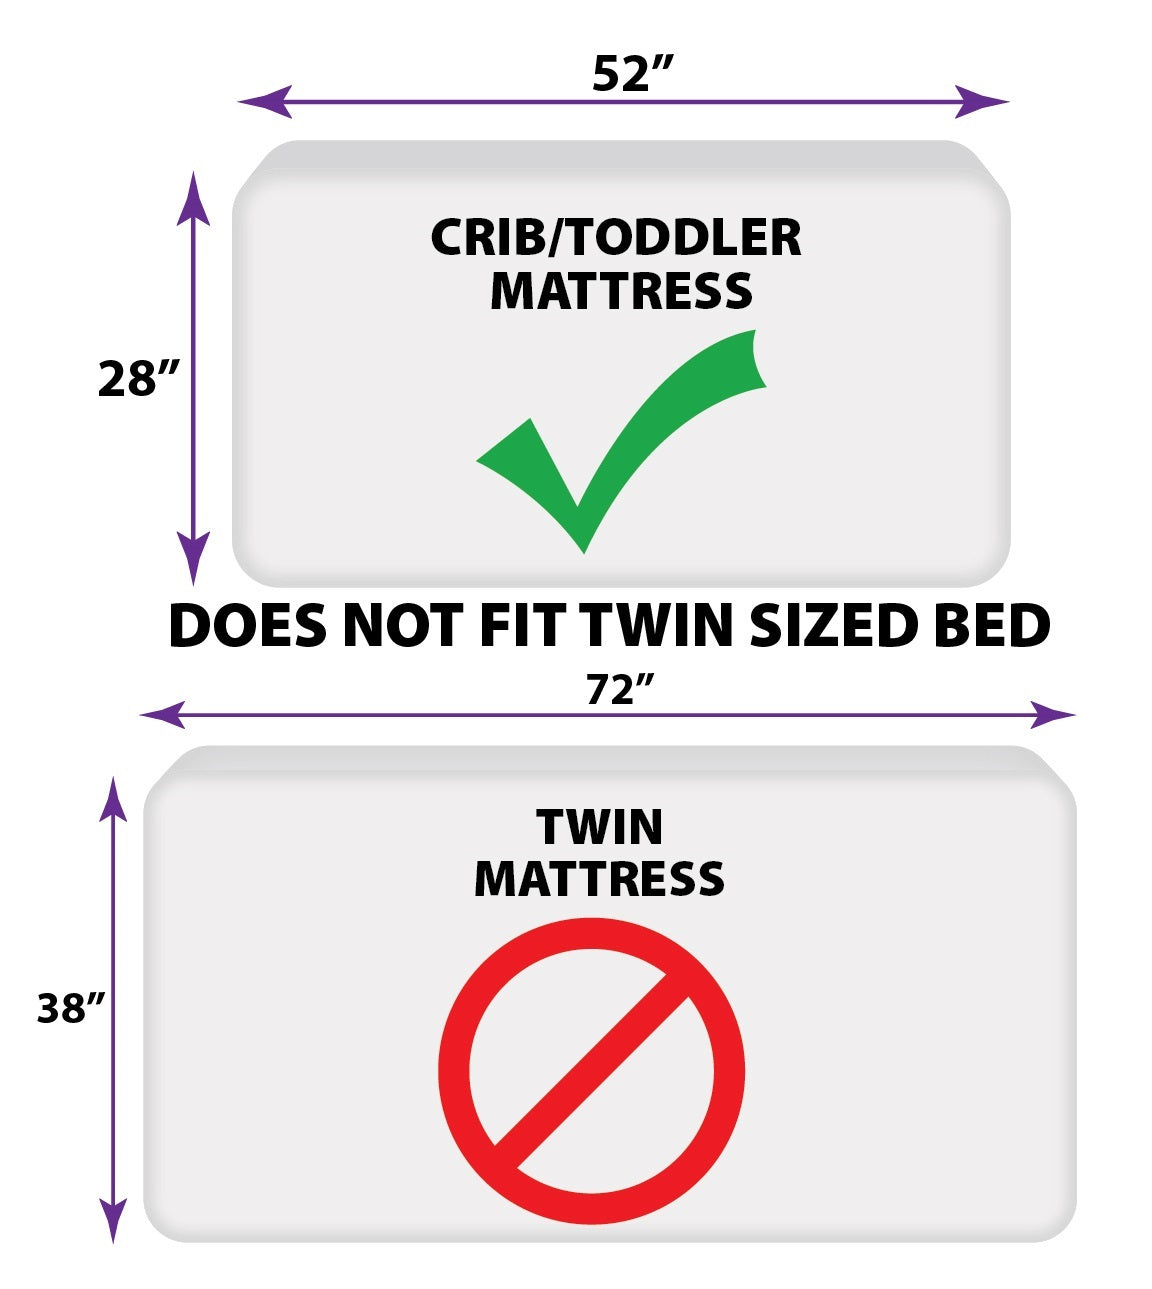 Carter's Monster Truck 4 Piece Toddler Bed Set - Comforter, Fitted Bottom Sheet, Flat Top Sheet, Standard Pillowcase, Navy and Grey